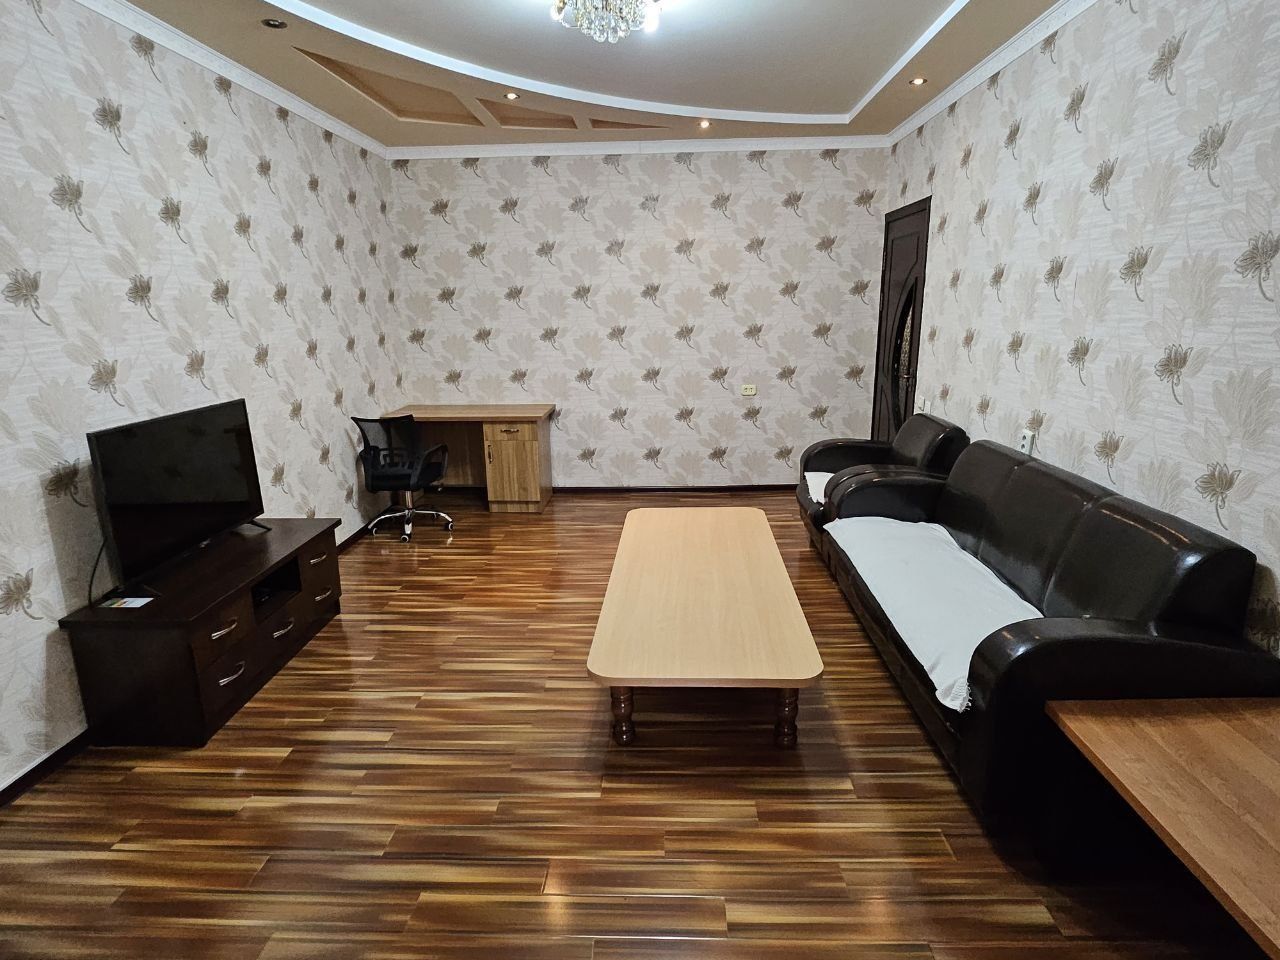 Продаётся 4х комнатная квартира в самом центре Ташкента госпитальный